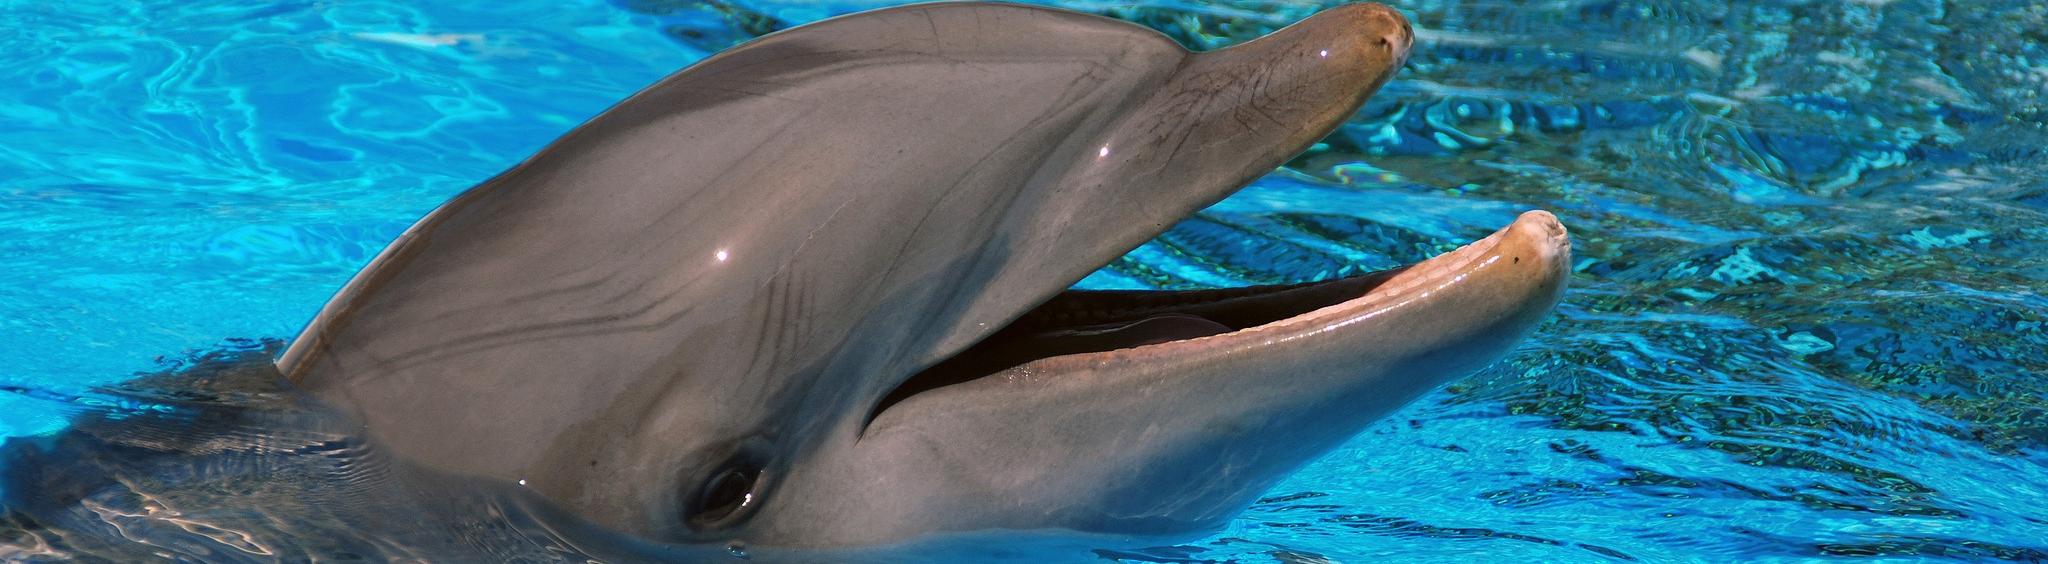 В Сочи появится стационар для лечения дельфинов 